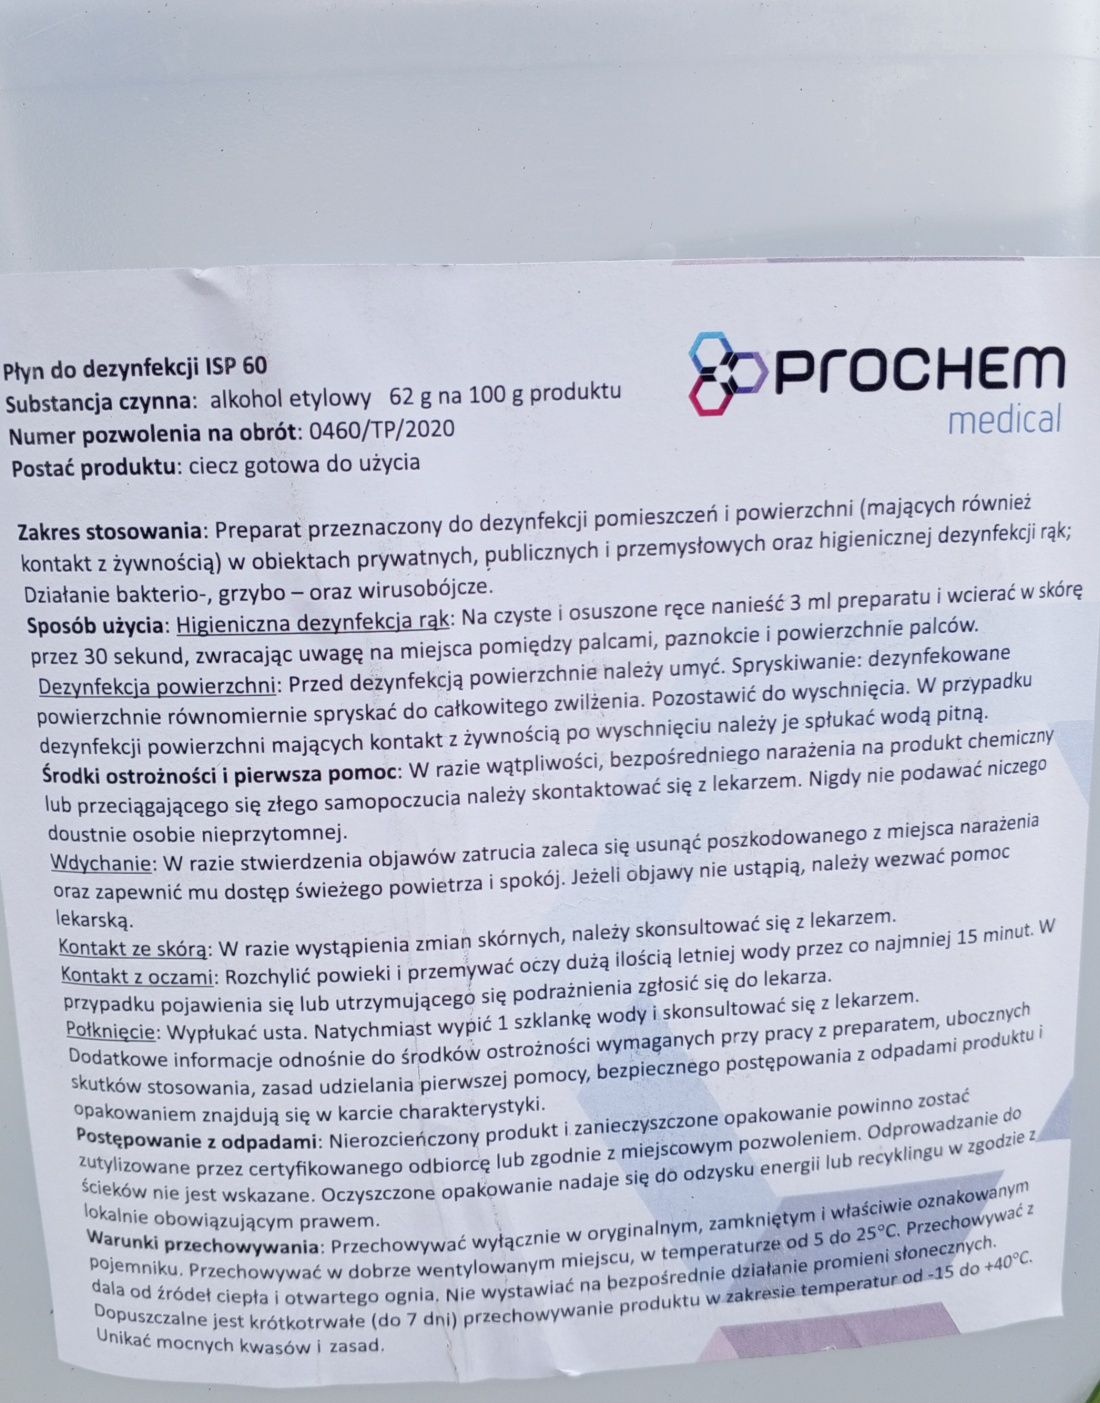 PROMOCJA płyn/płyny do dezynfekcji Prochem medical ISP 60 5 litrów